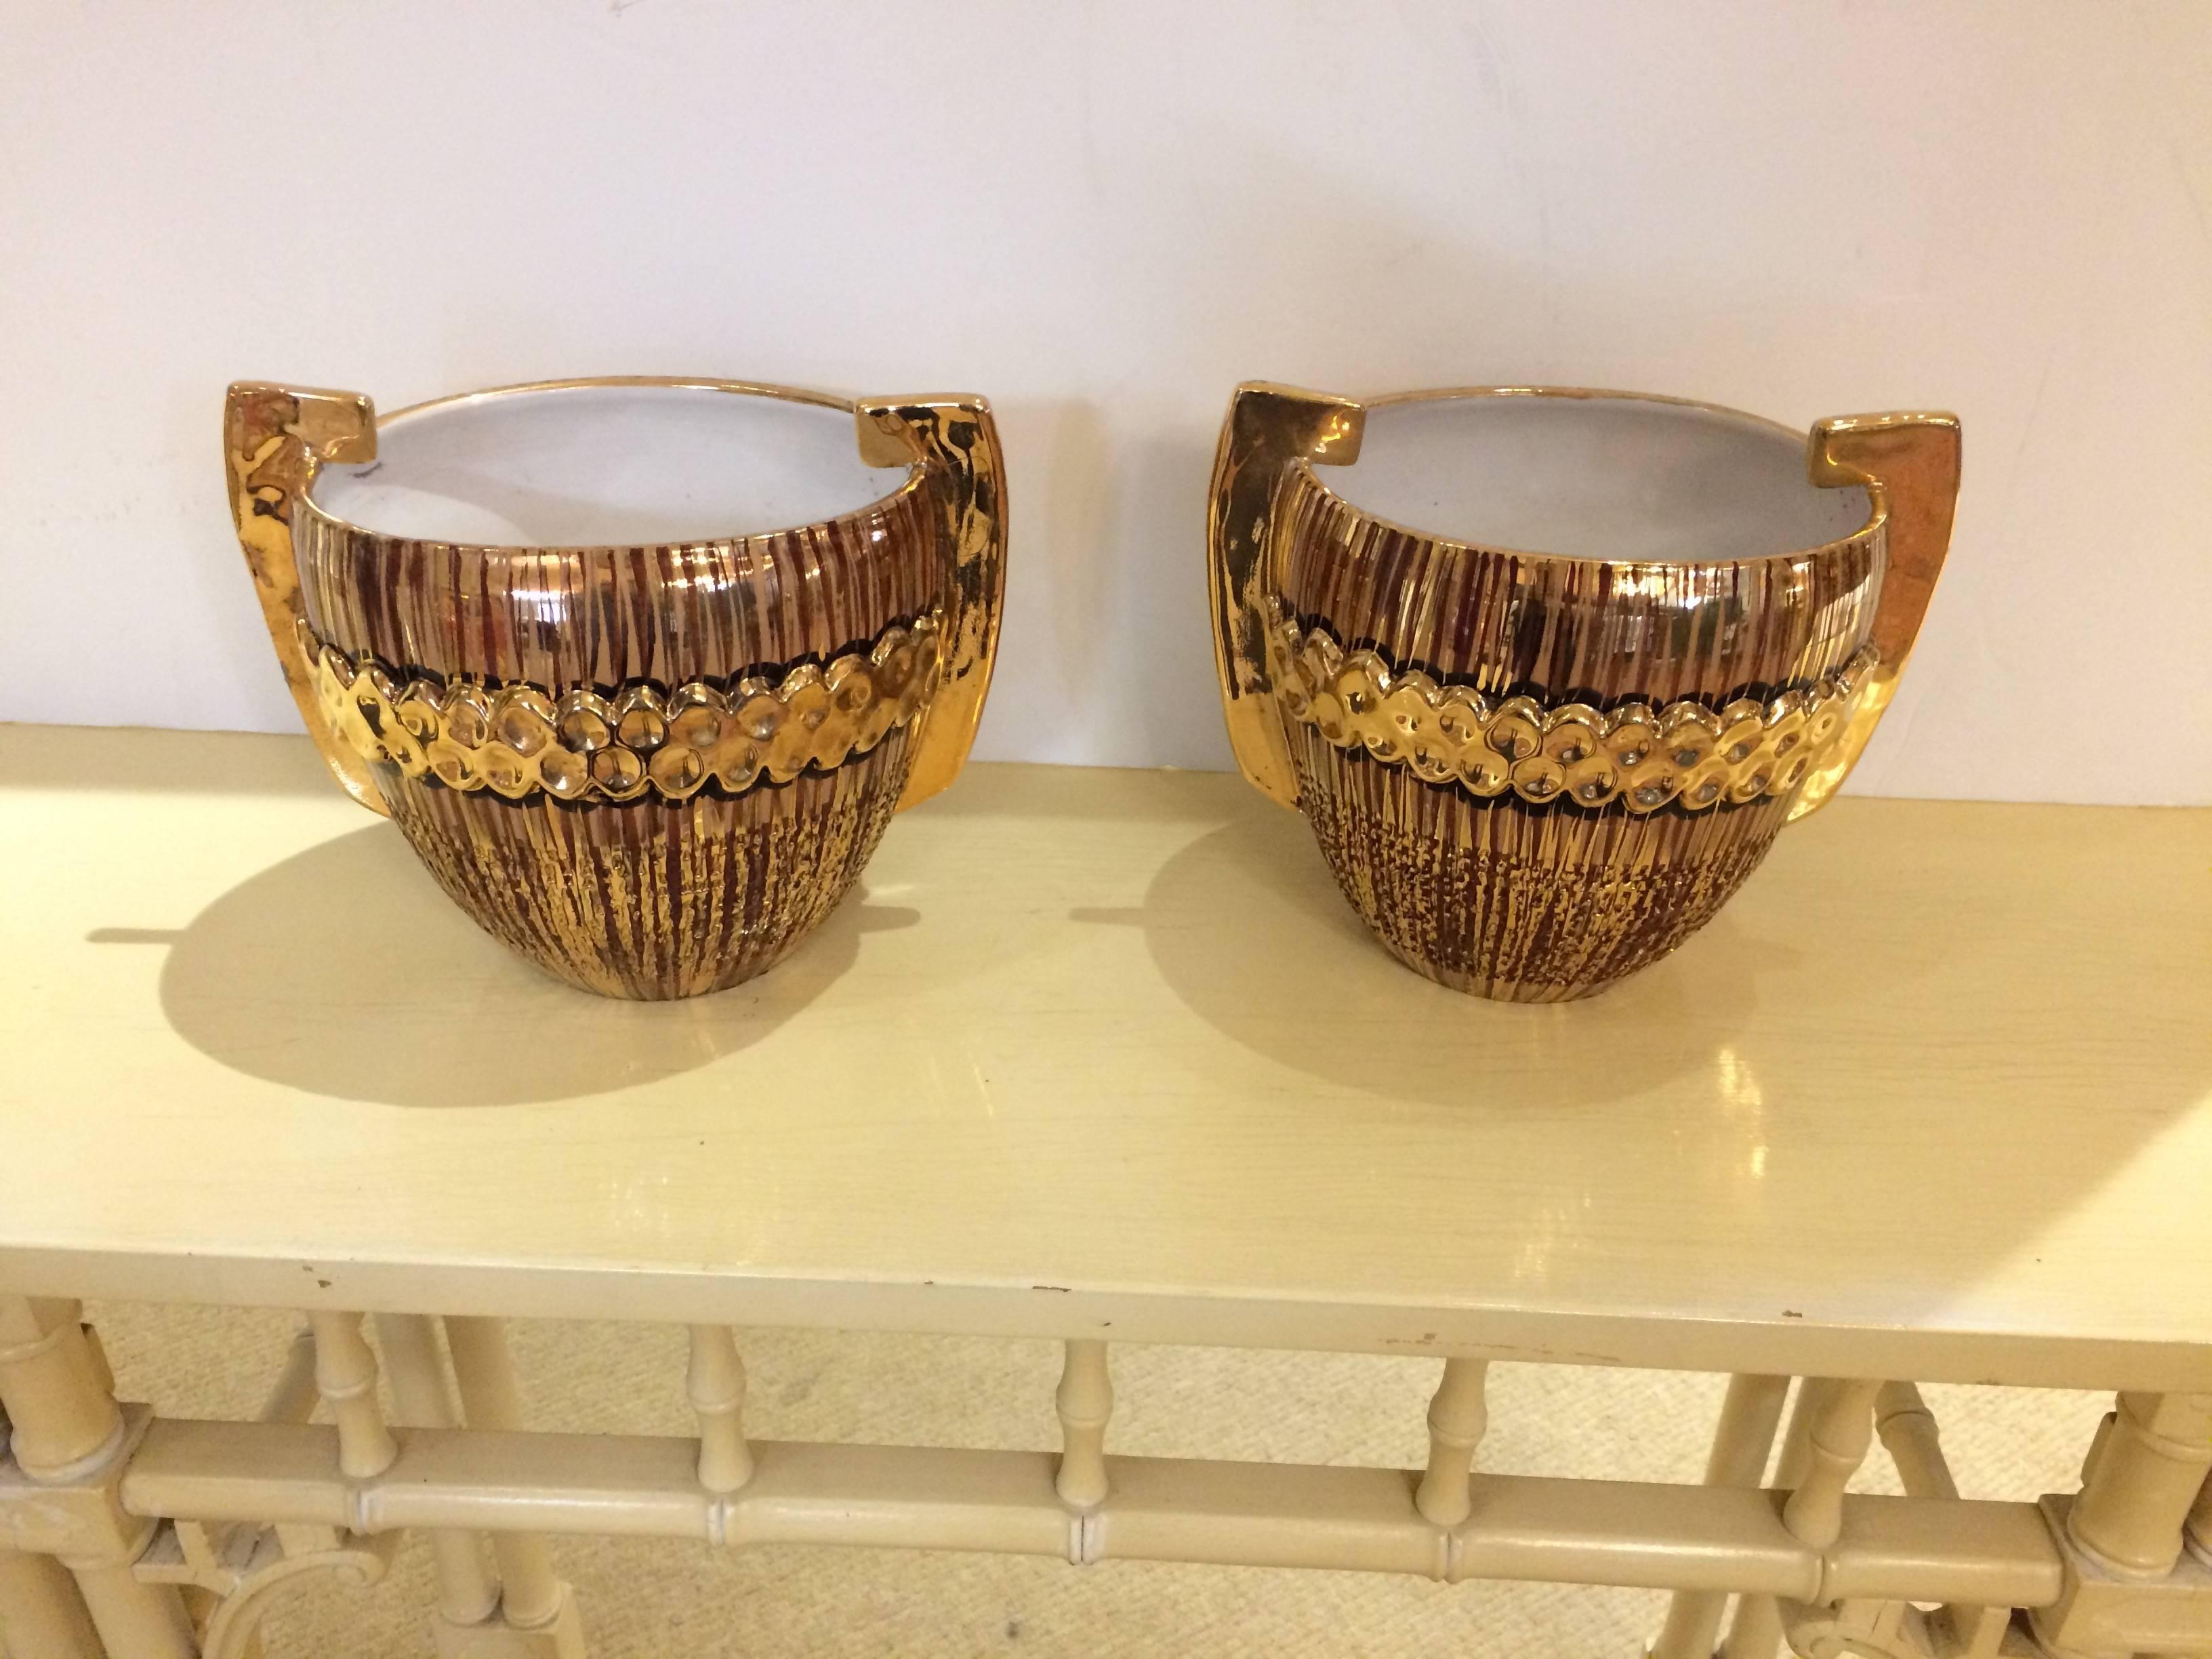 Deux cache-pots, jardinières ou autres accessoires en poterie italienne avec une glaçure dorée et des poignées glamour.